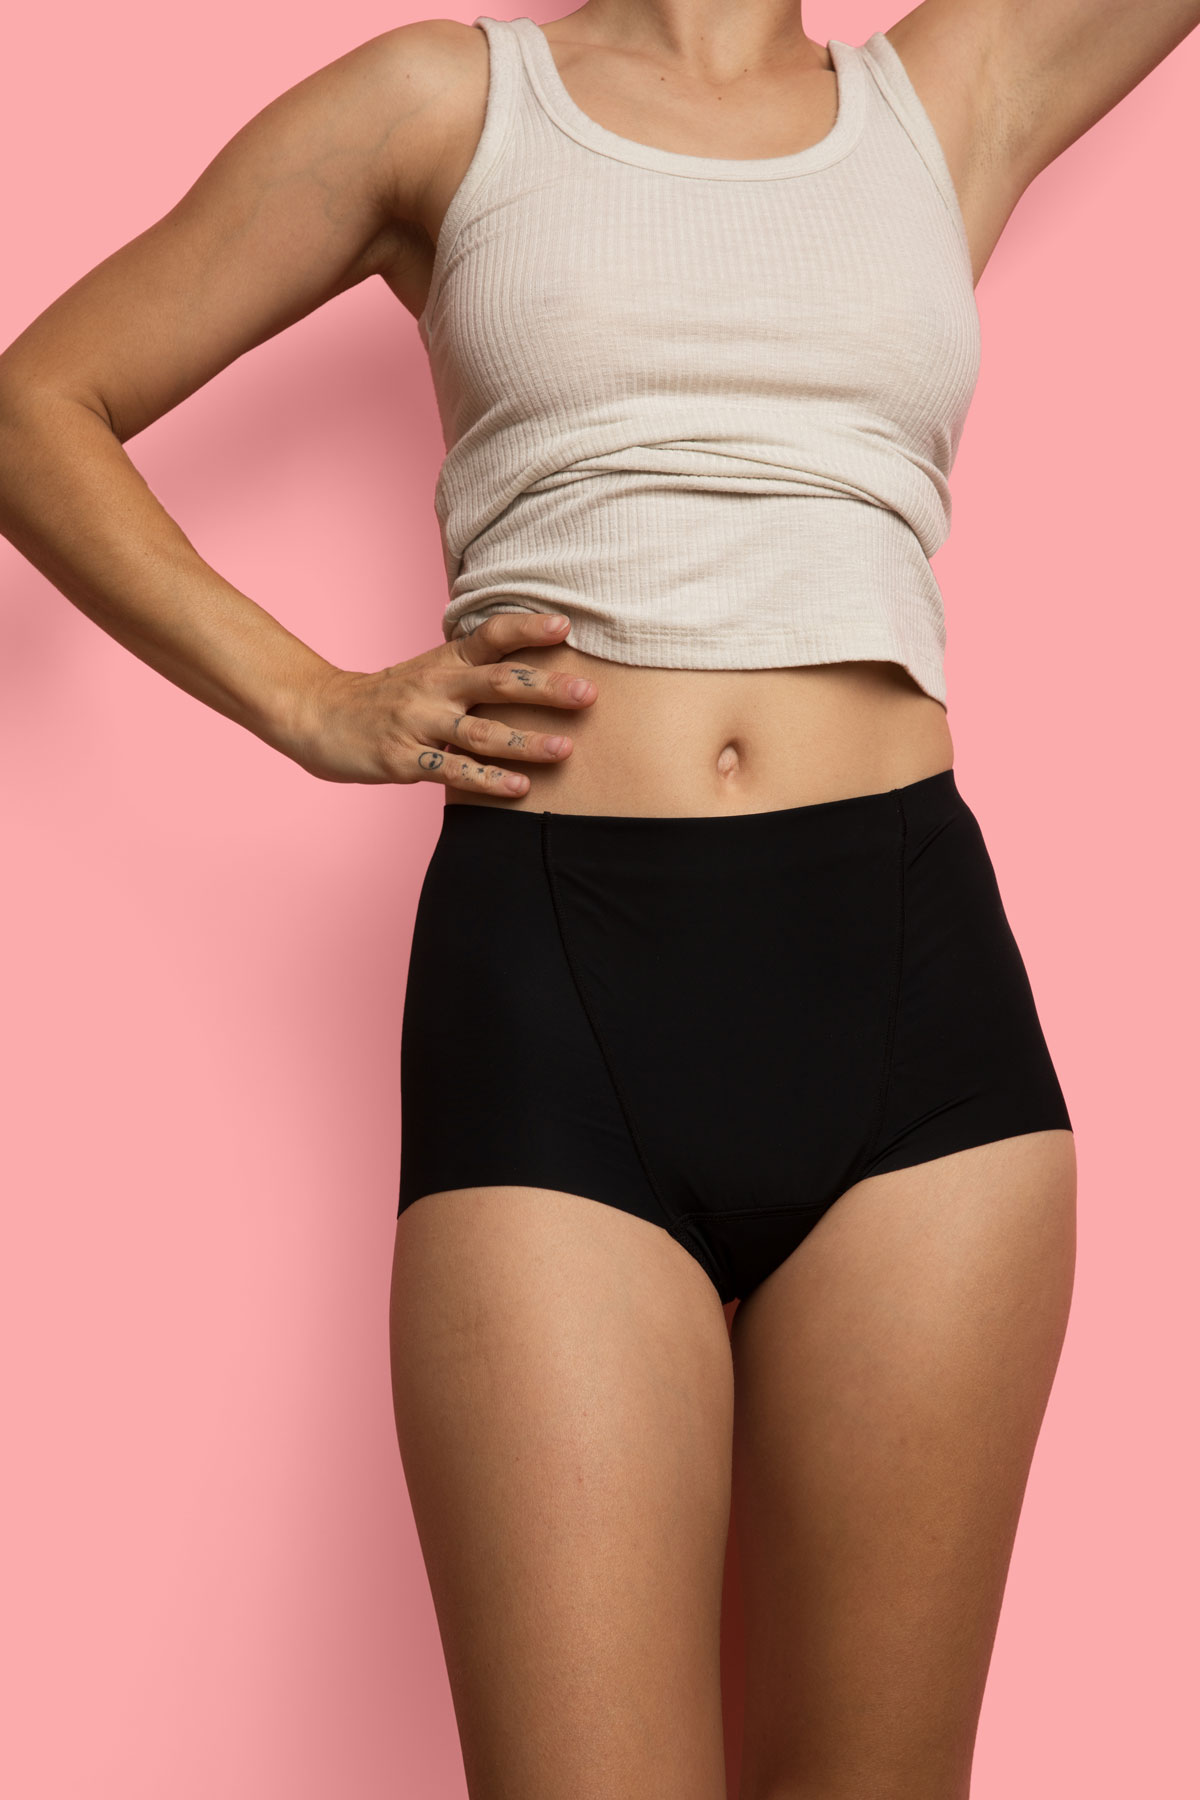 Pregnancy Underwear That Helps Relieve Pelvic Pressure